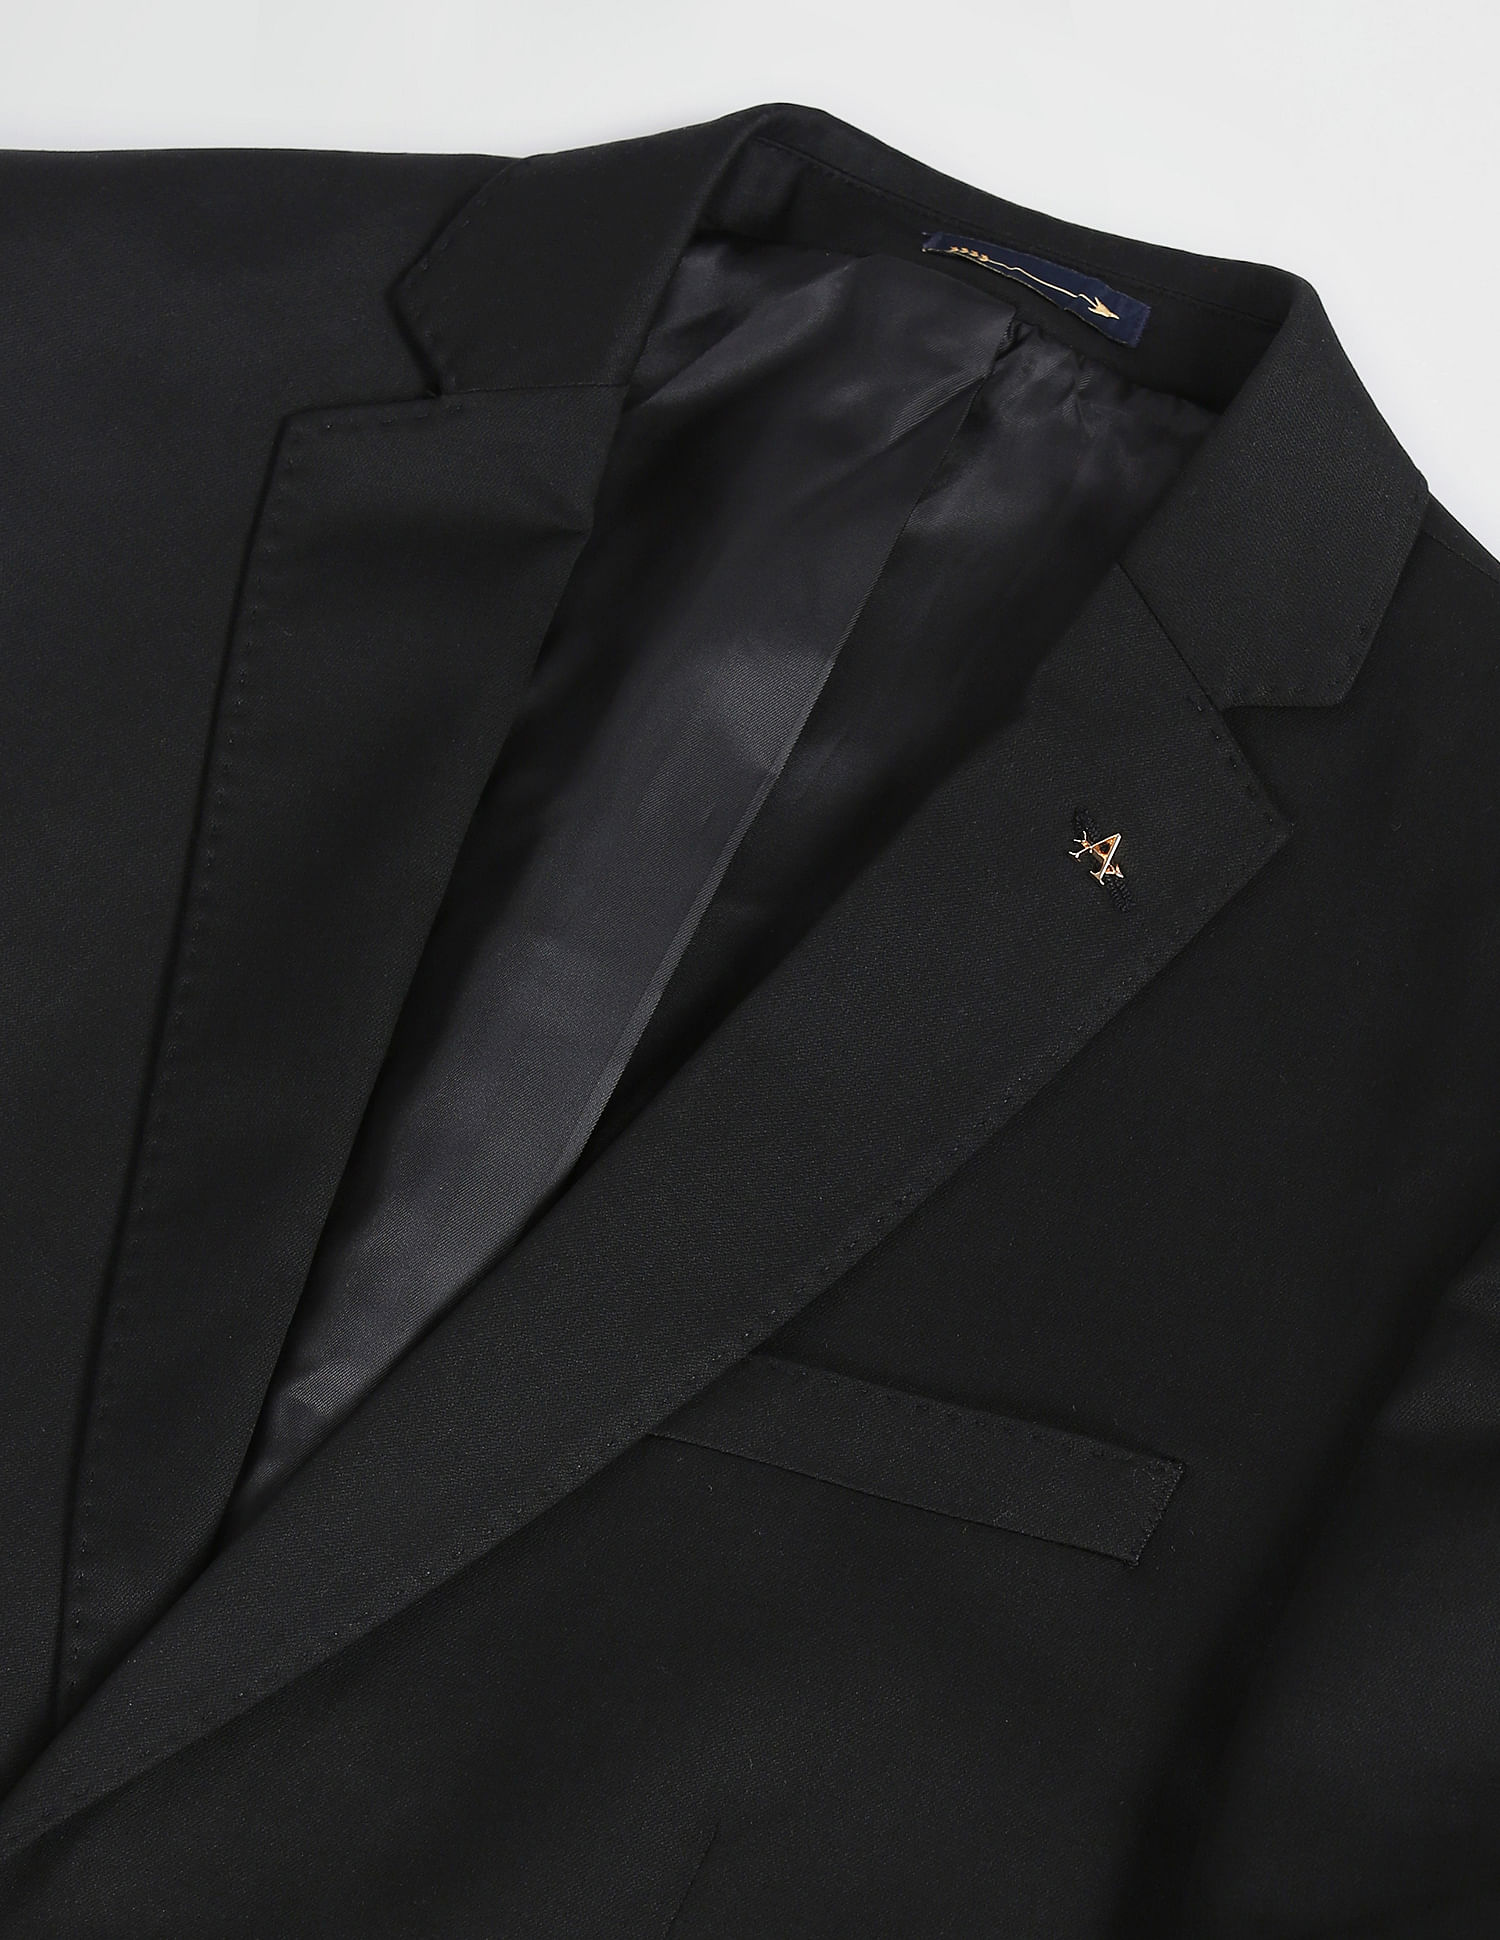 Buy Highlander Black Slim Fit Solid Casual Shirt for Men Online at Rs.494 -  Ketch